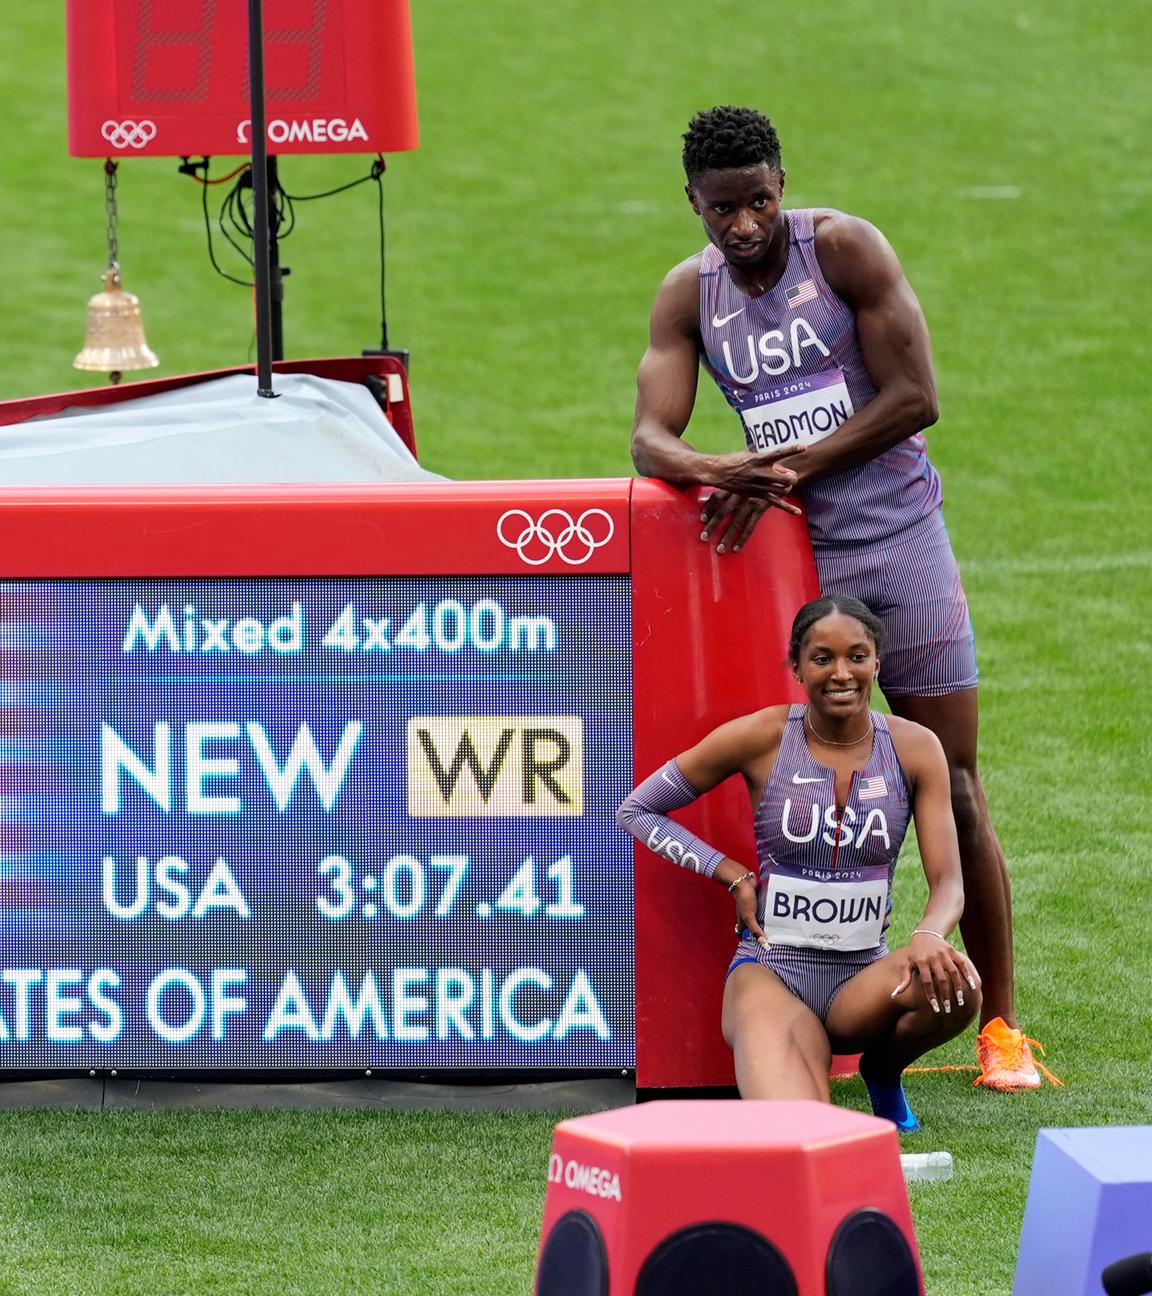 Das Team der USA posiert vor der Anzeigetafel, nachdem sie in der 4x400m Staffel einen neuen Weltrekord erreicht haben.